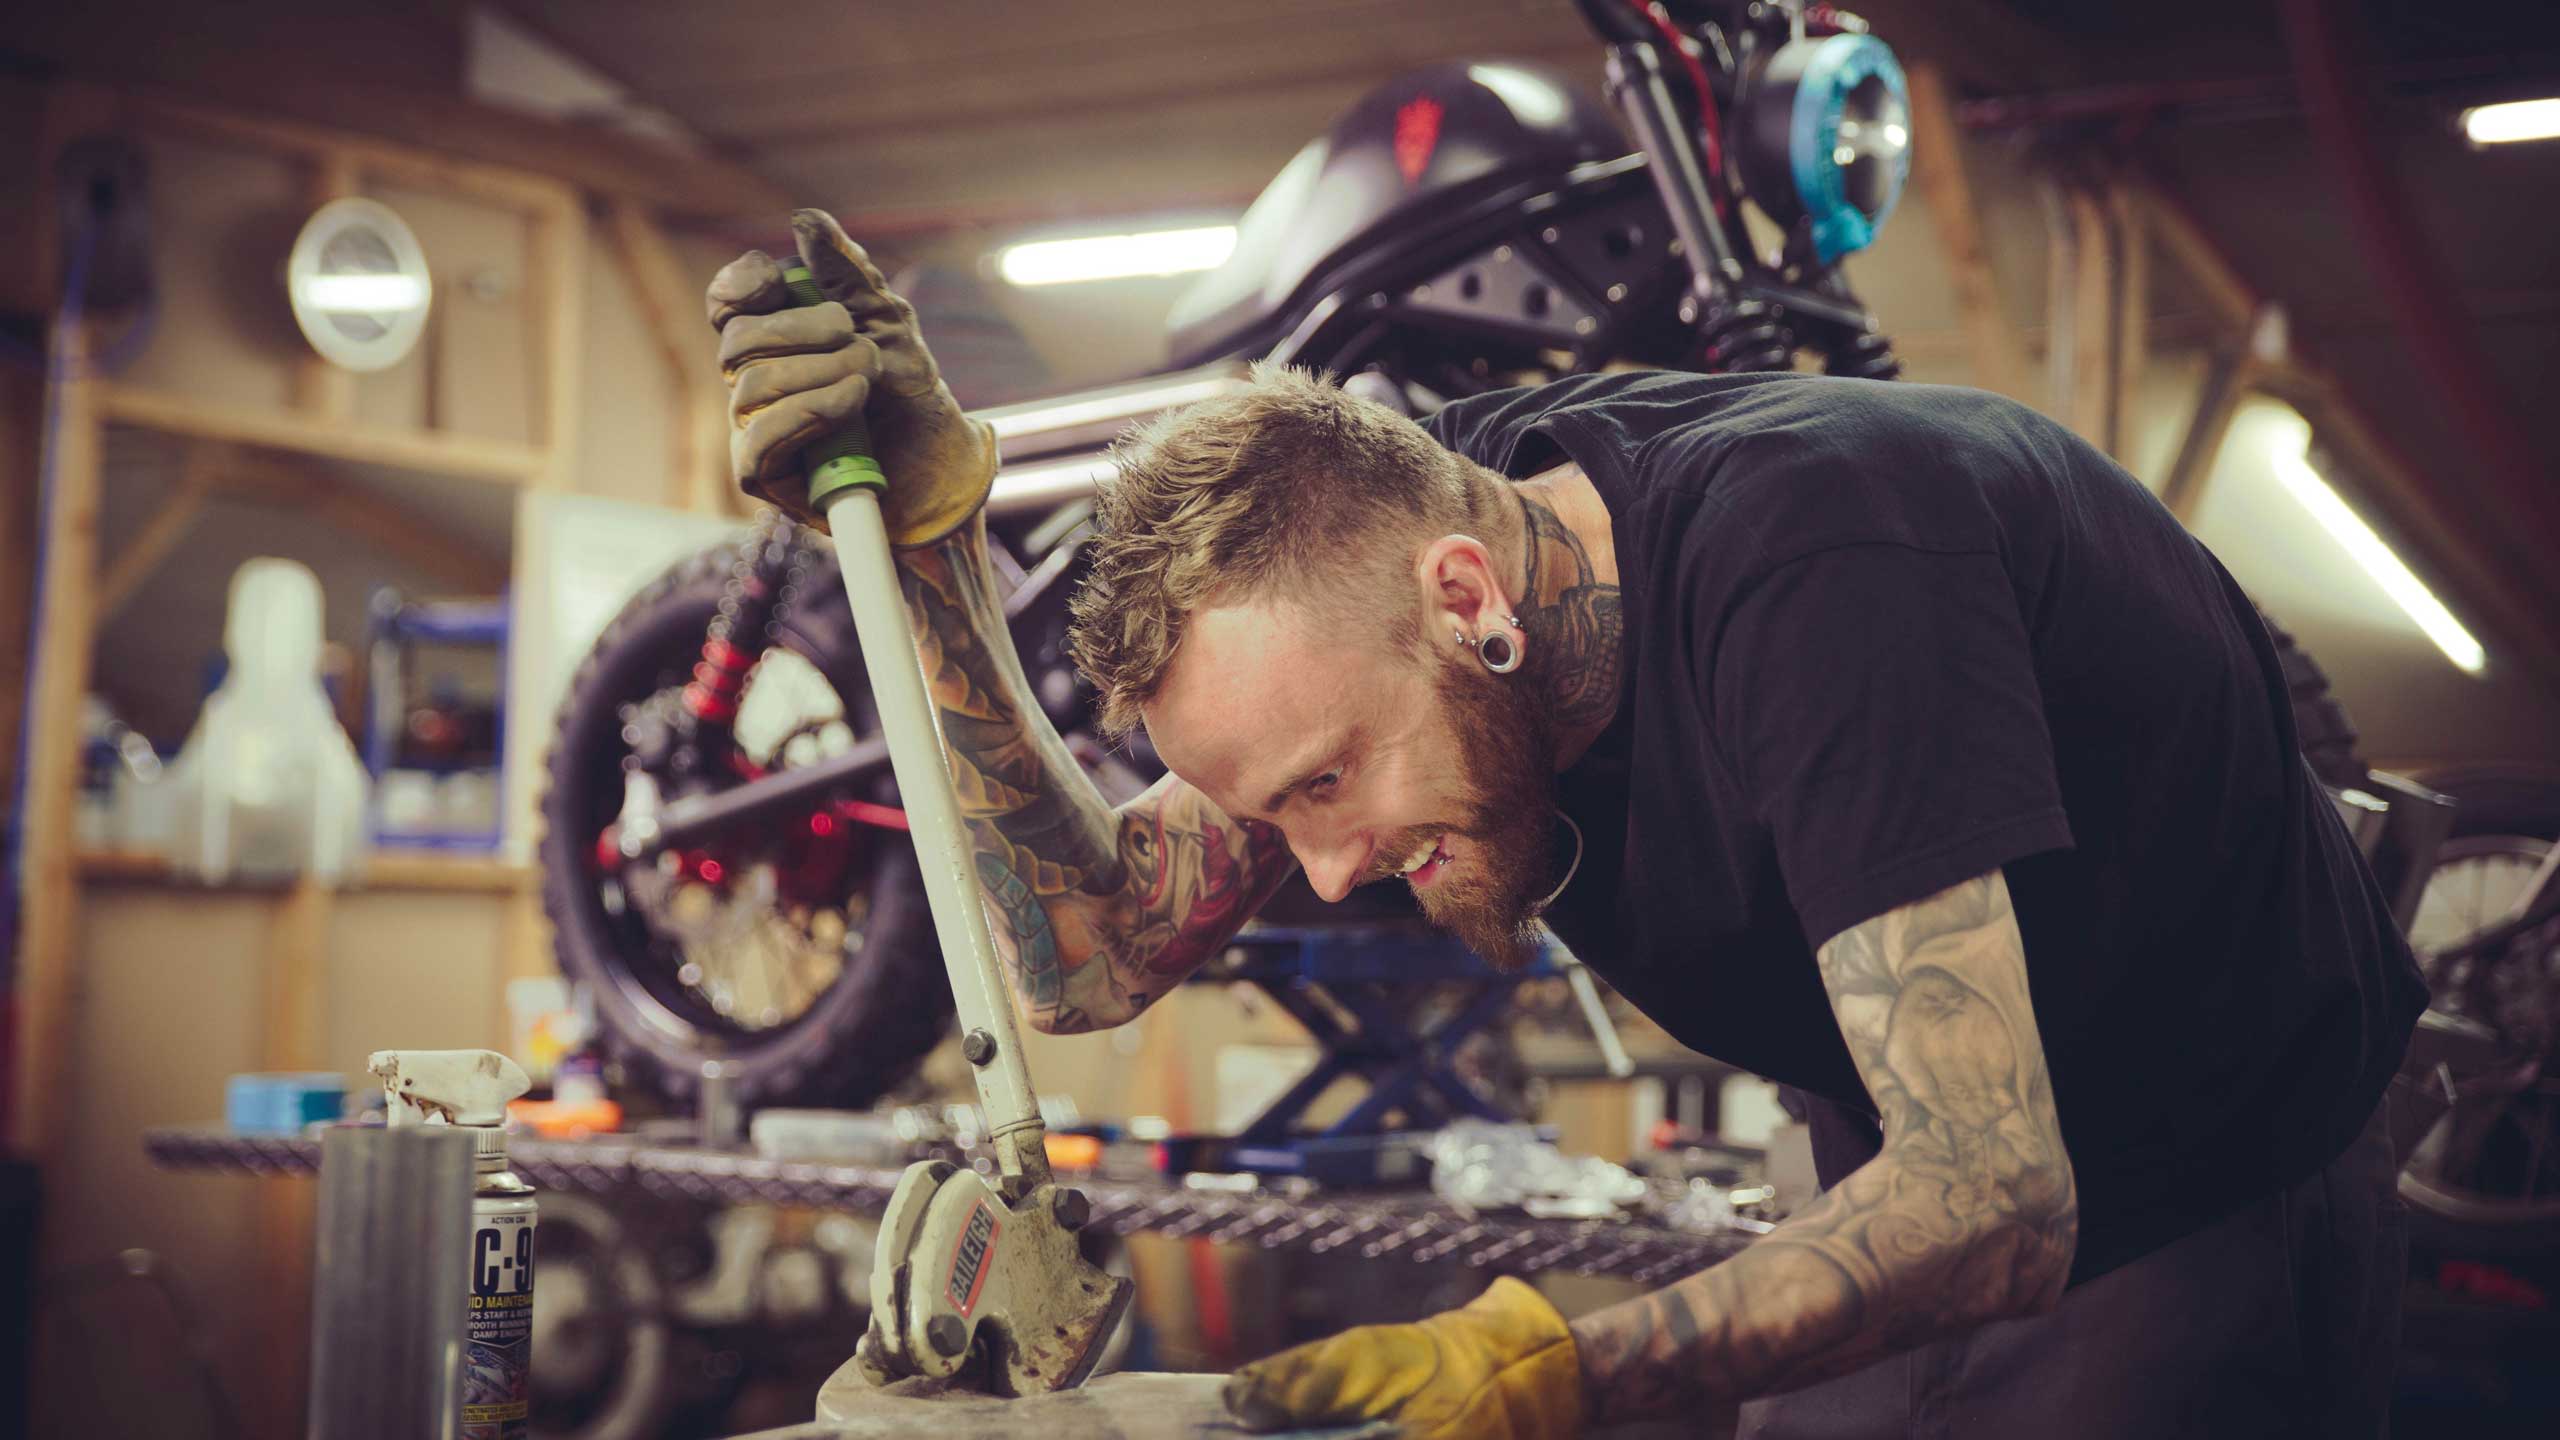 Custom motorcycle builder at work